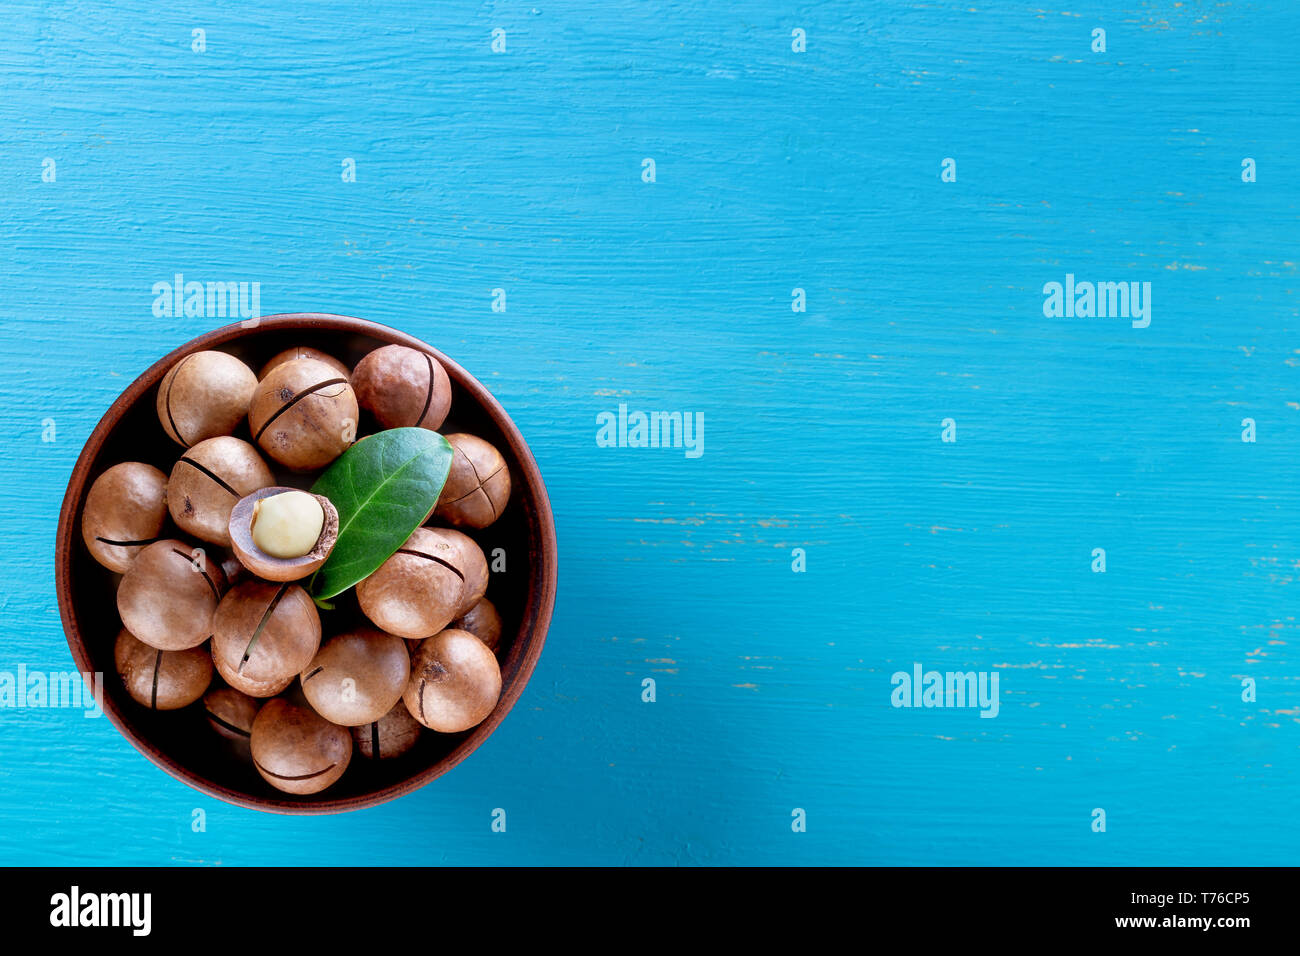 Les noix de macadamia d'Australie avec la feuille de la plaque sur fond de bois bleu Banque D'Images